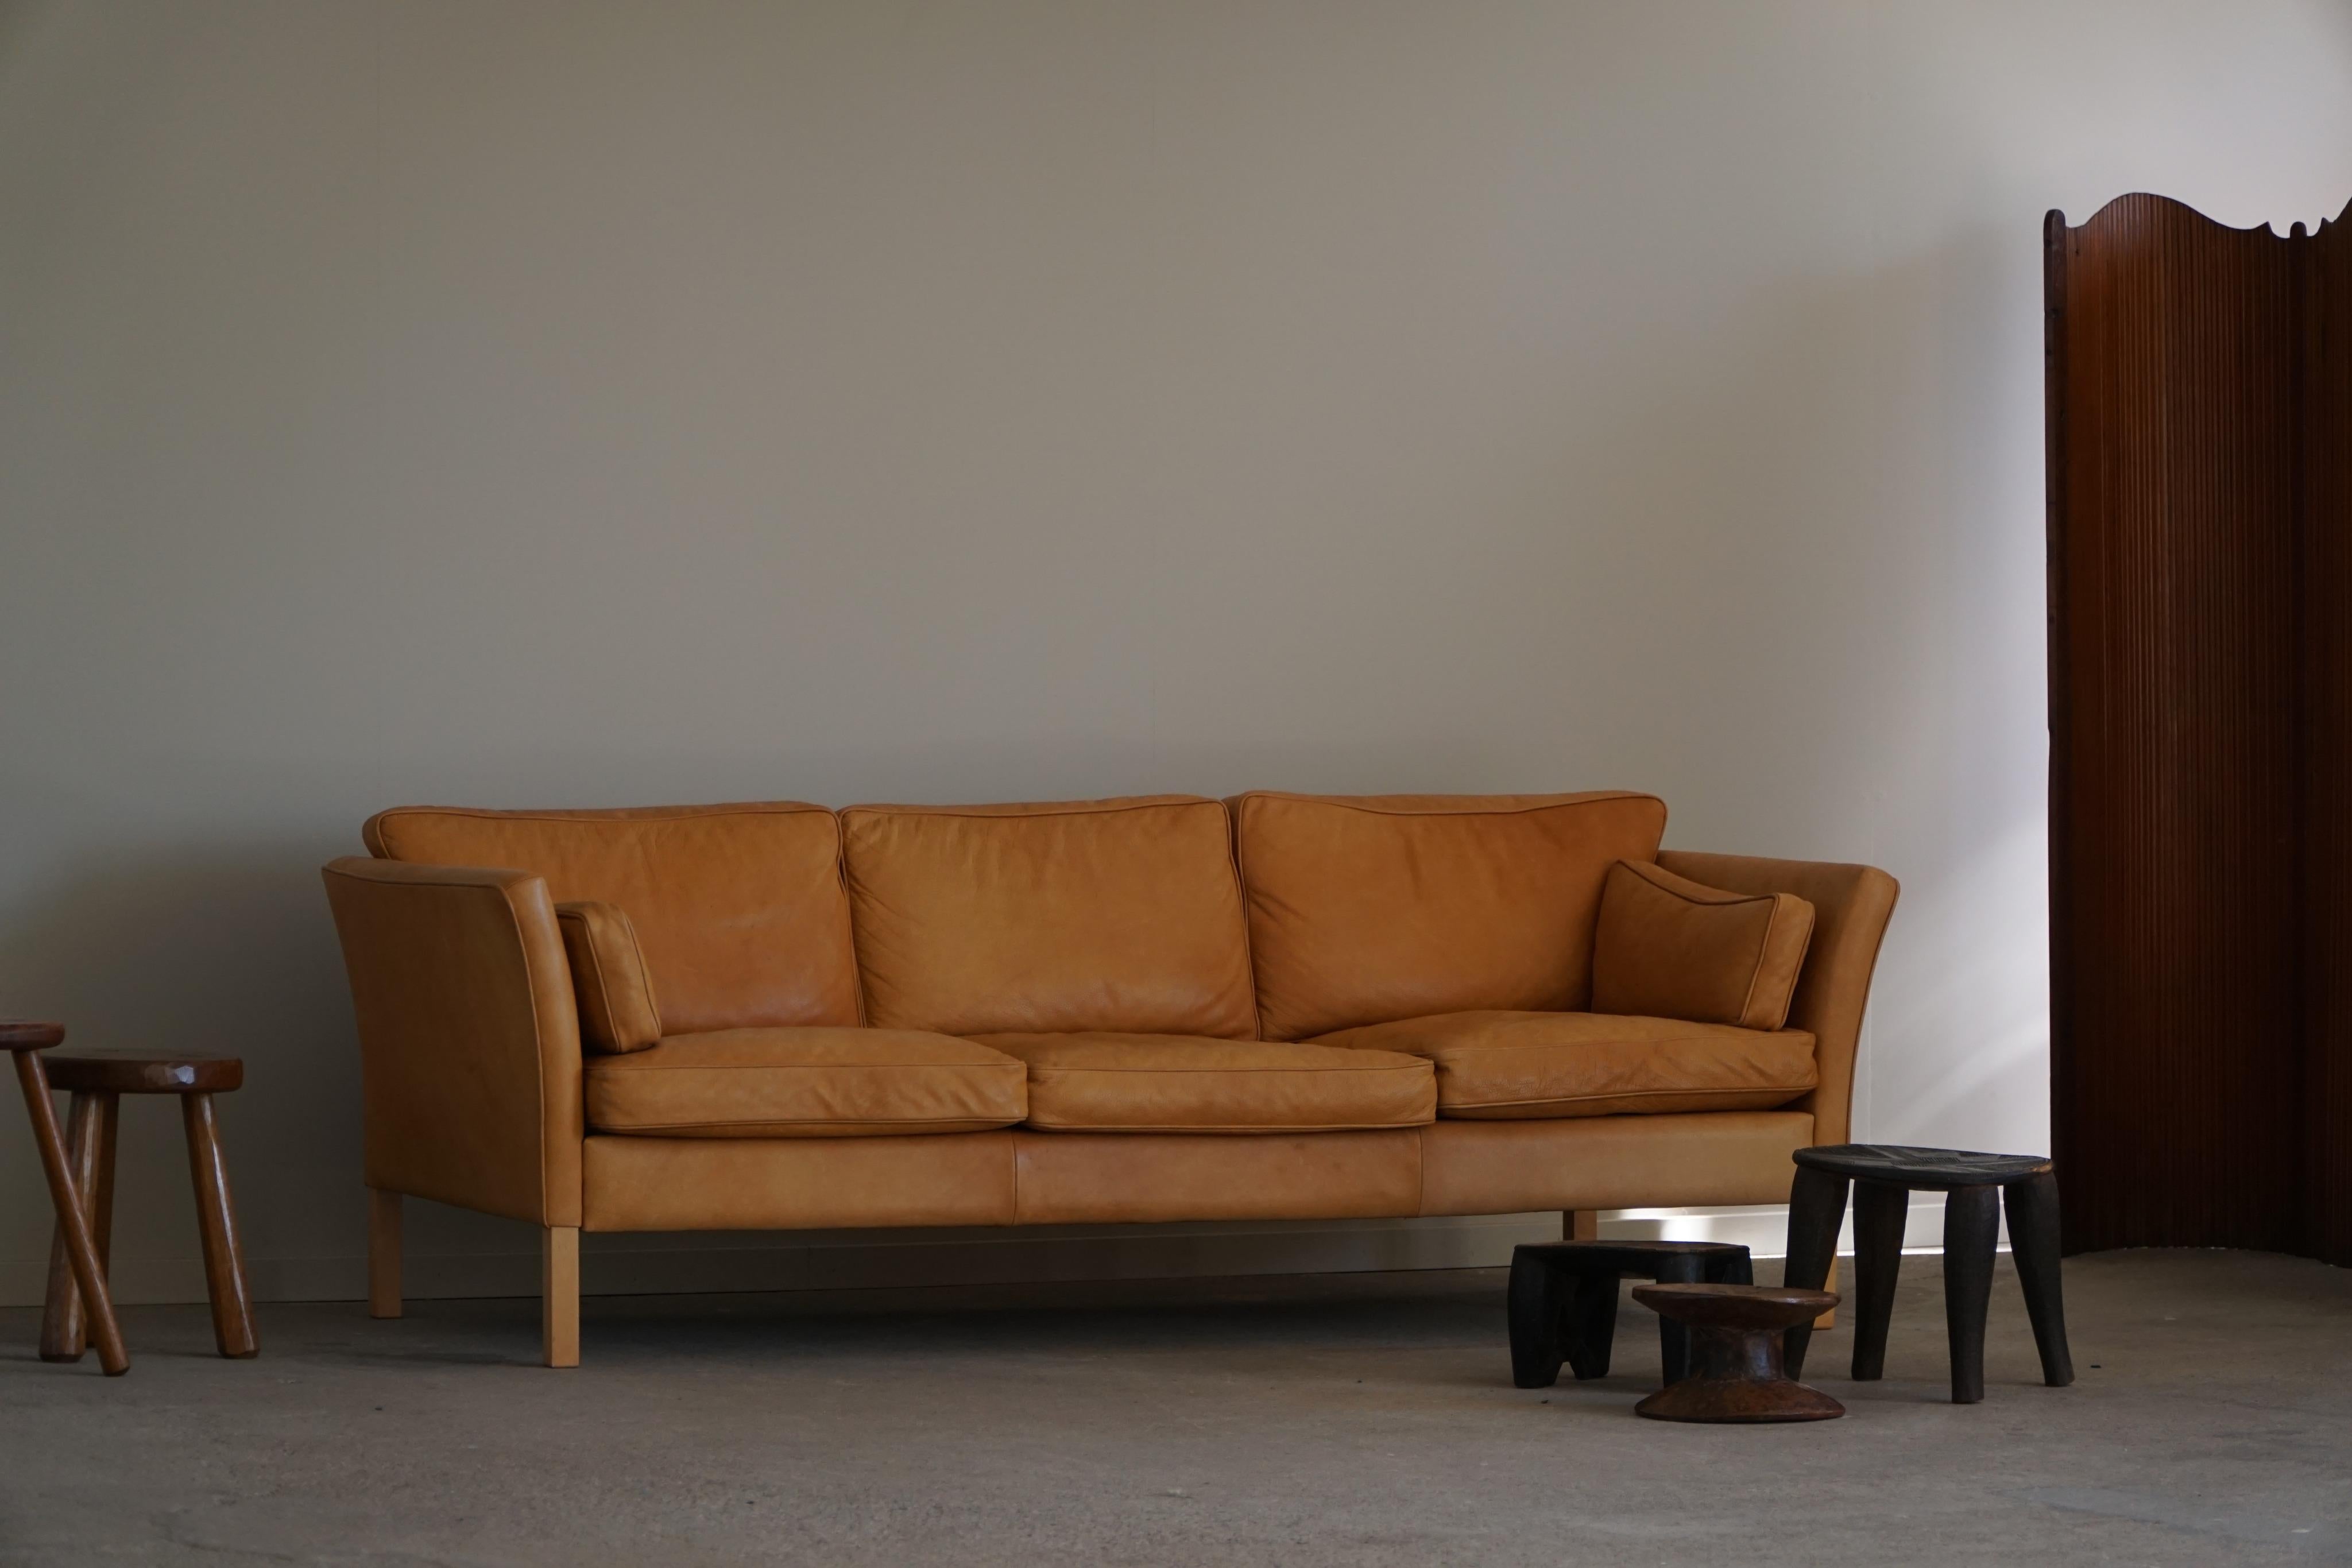 Ein wirklich schönes klassisches dänisches modernes Dreisitzersofa, hergestellt von Stouby in Dänemark. Das Sofa ist mit hochwertigem cognacbraunem Leder gepolstert, das eine reiche und warme Patina aufweist, die ihm einen luxuriösen Vintage-Look